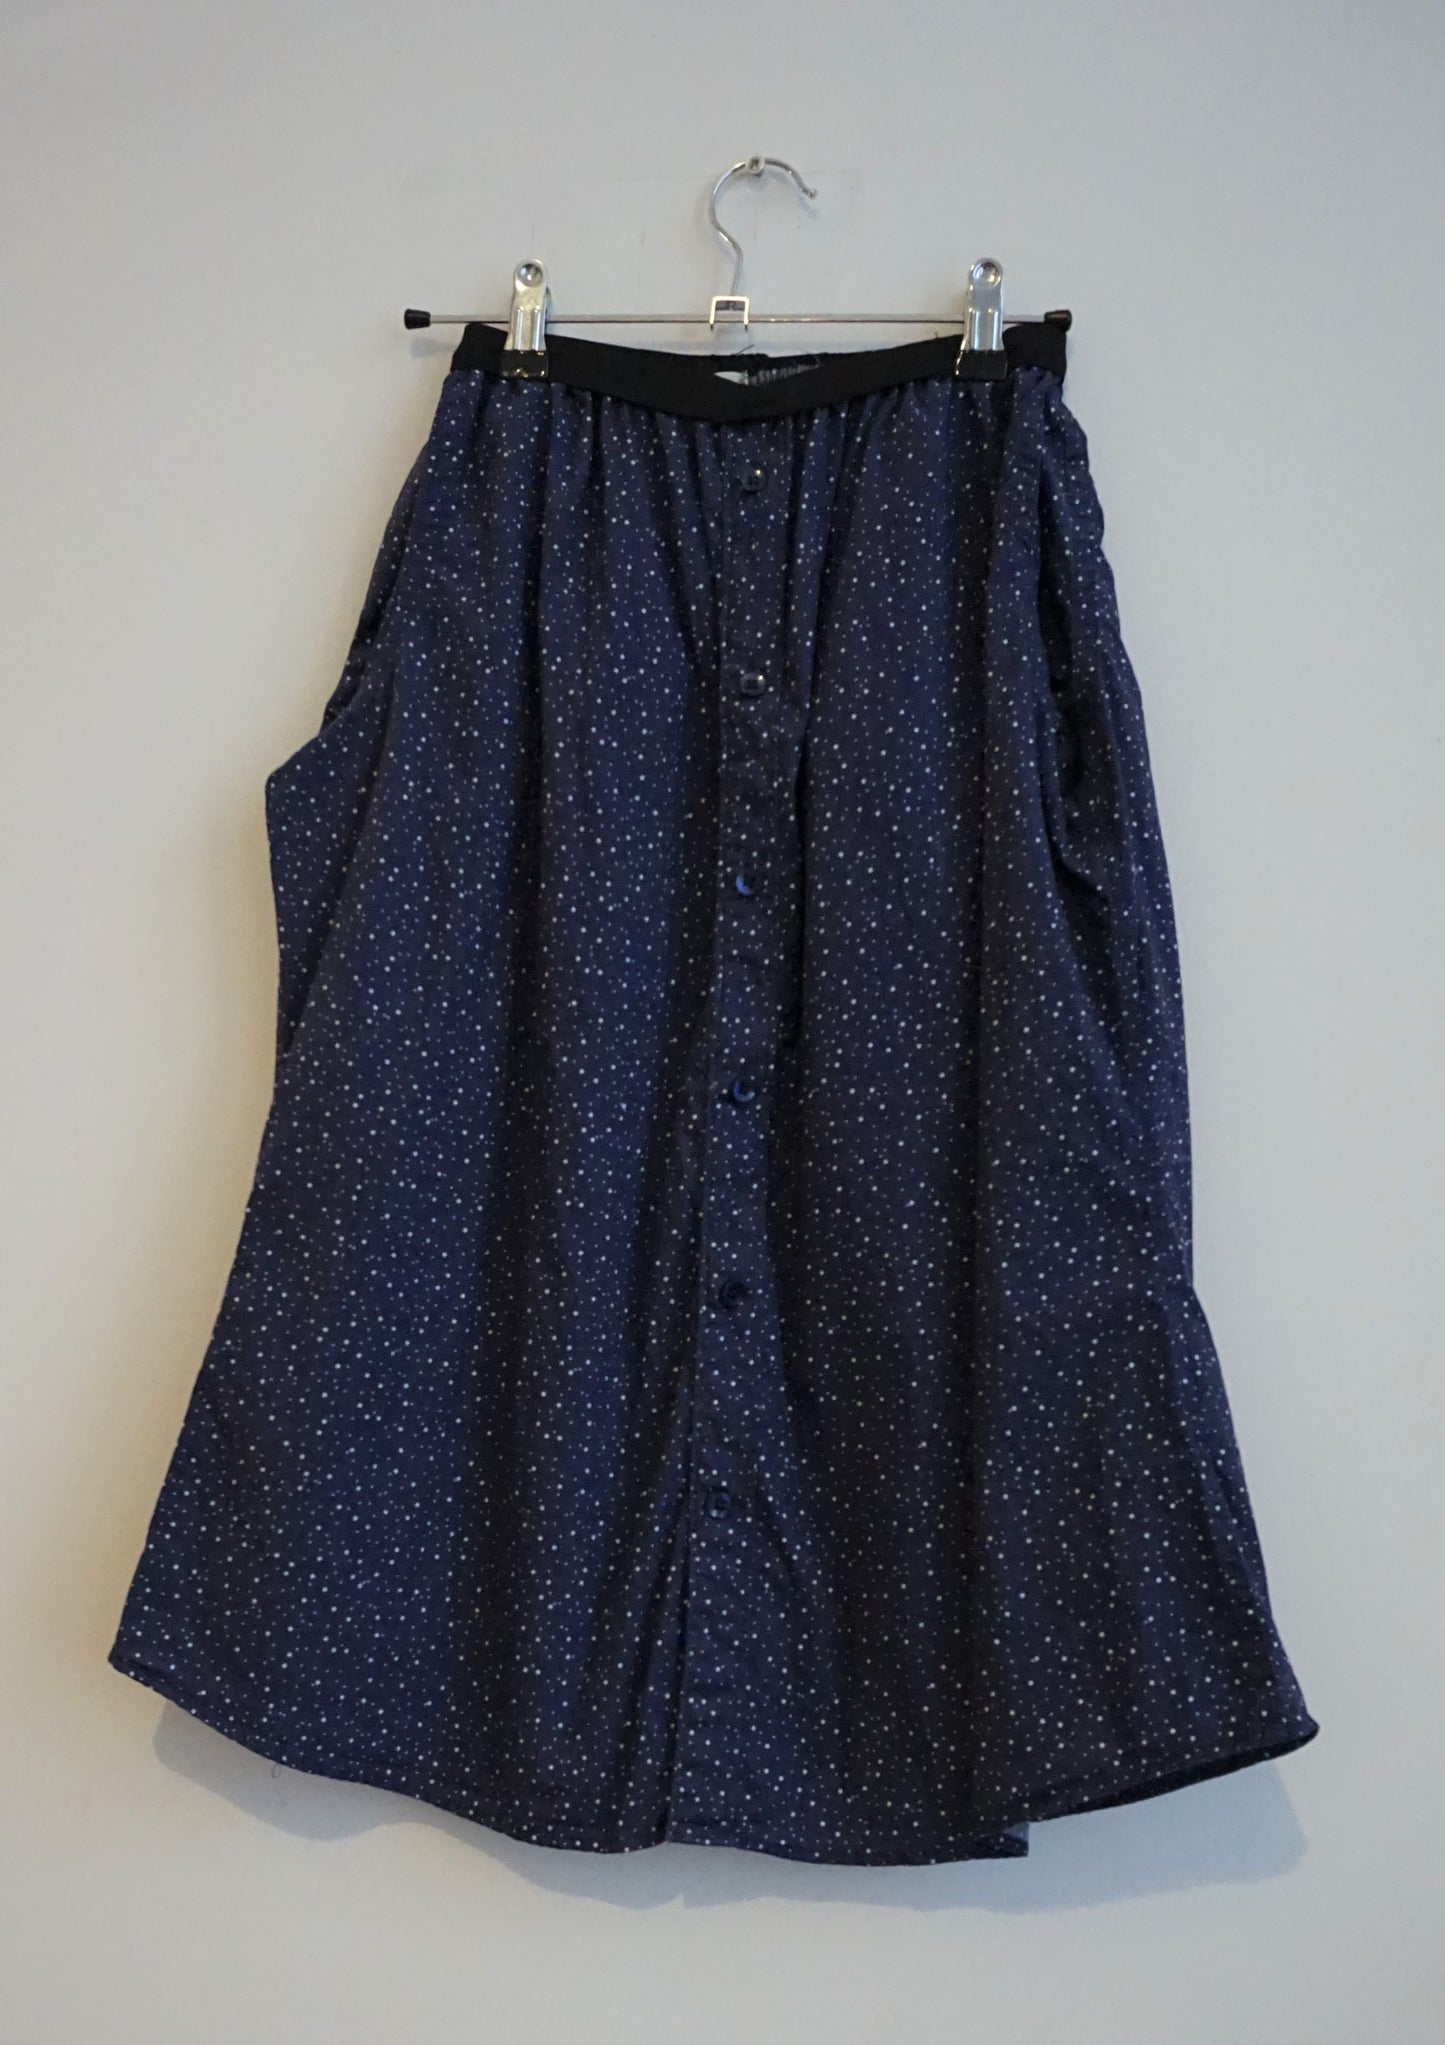 Speckled button up elasticated waist skirt